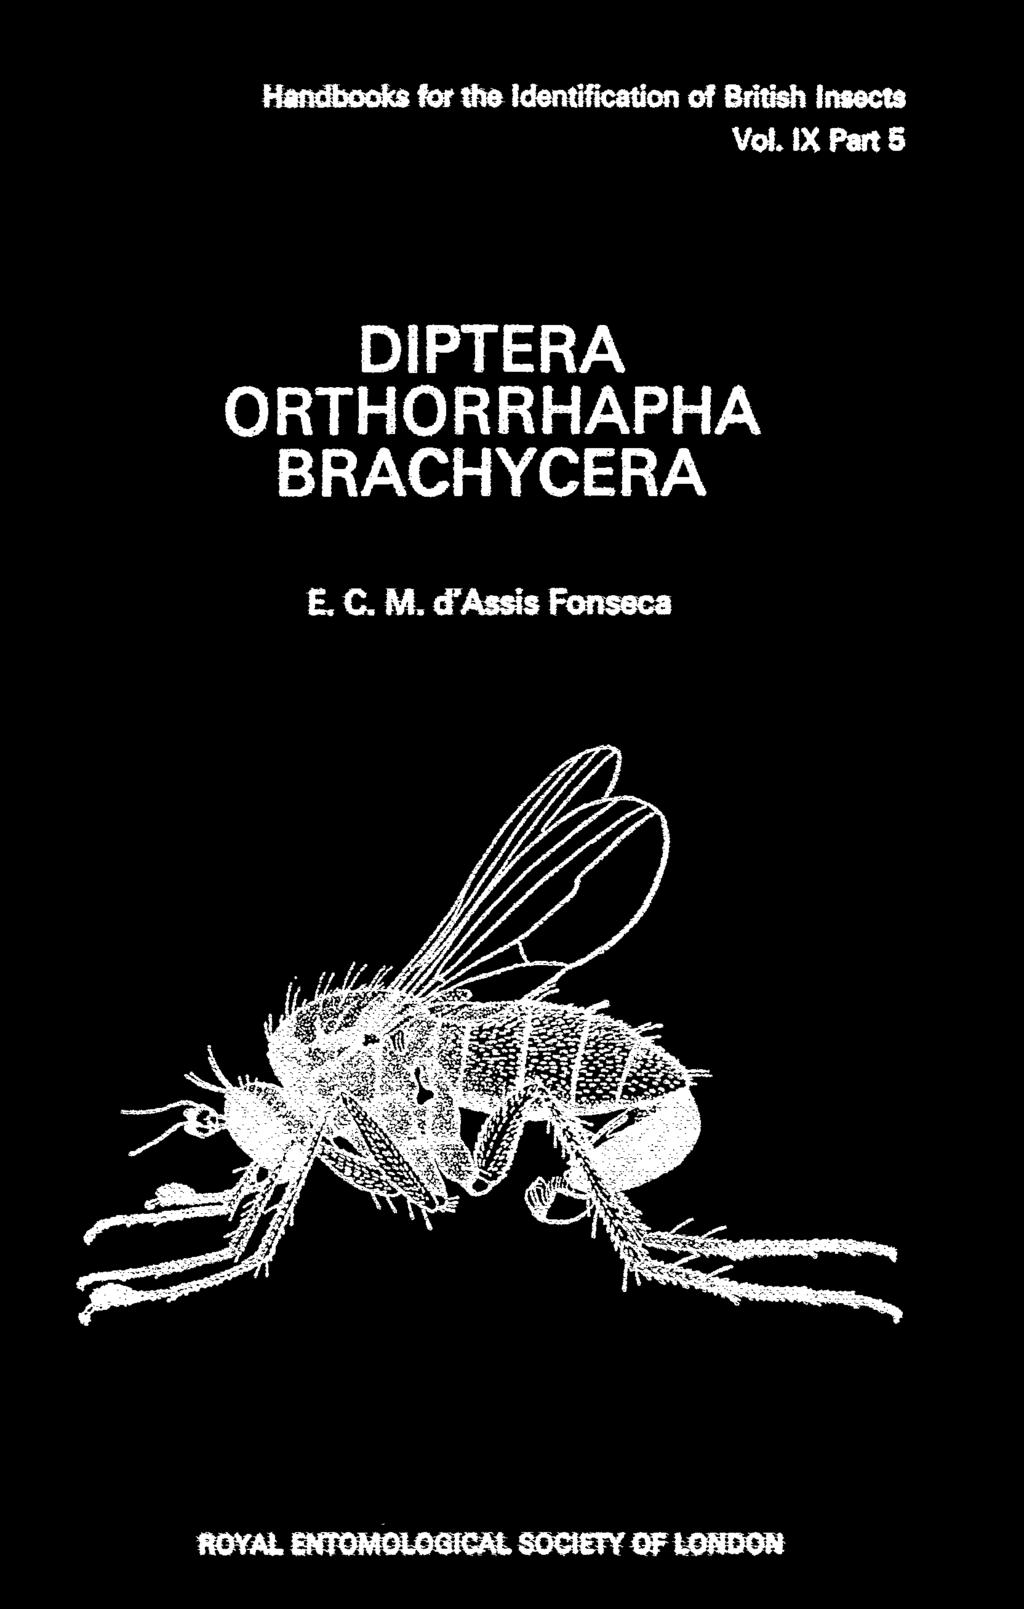 ORTHORRHAPHA BRACHYCERA